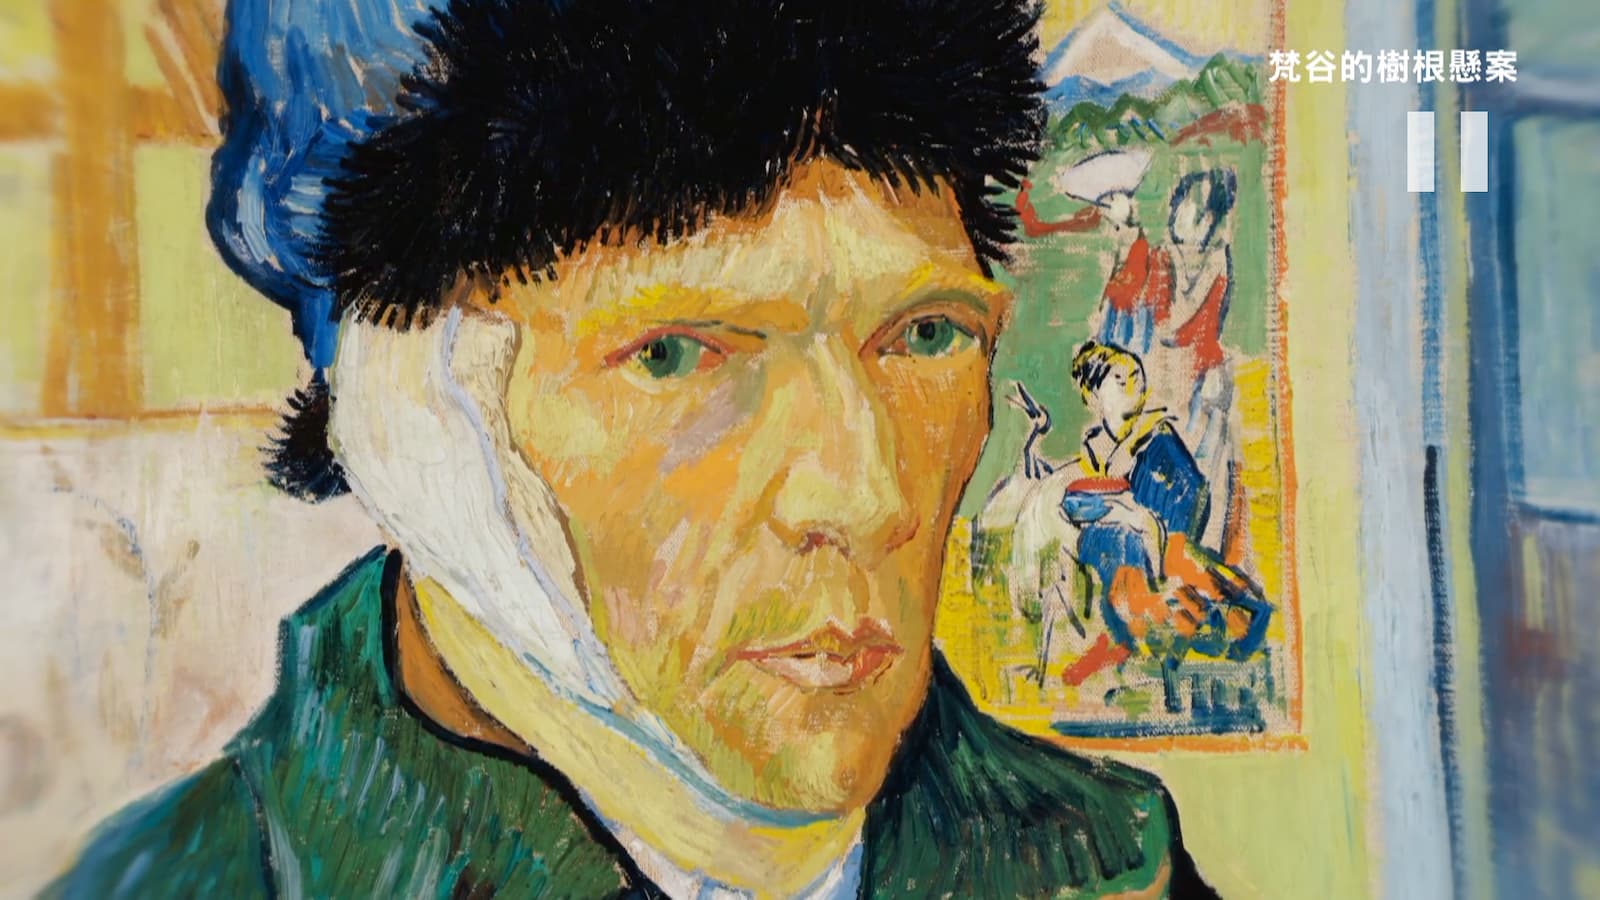 梵谷的藝術作品《耳朵綁上繃帶的自畫像》（Self-Portrait with Bandaged Ear），現收藏於英國倫敦可陶德學院畫廊 (Courtauld Institute Galleries, London)。劇照／《梵谷的樹根懸案》
